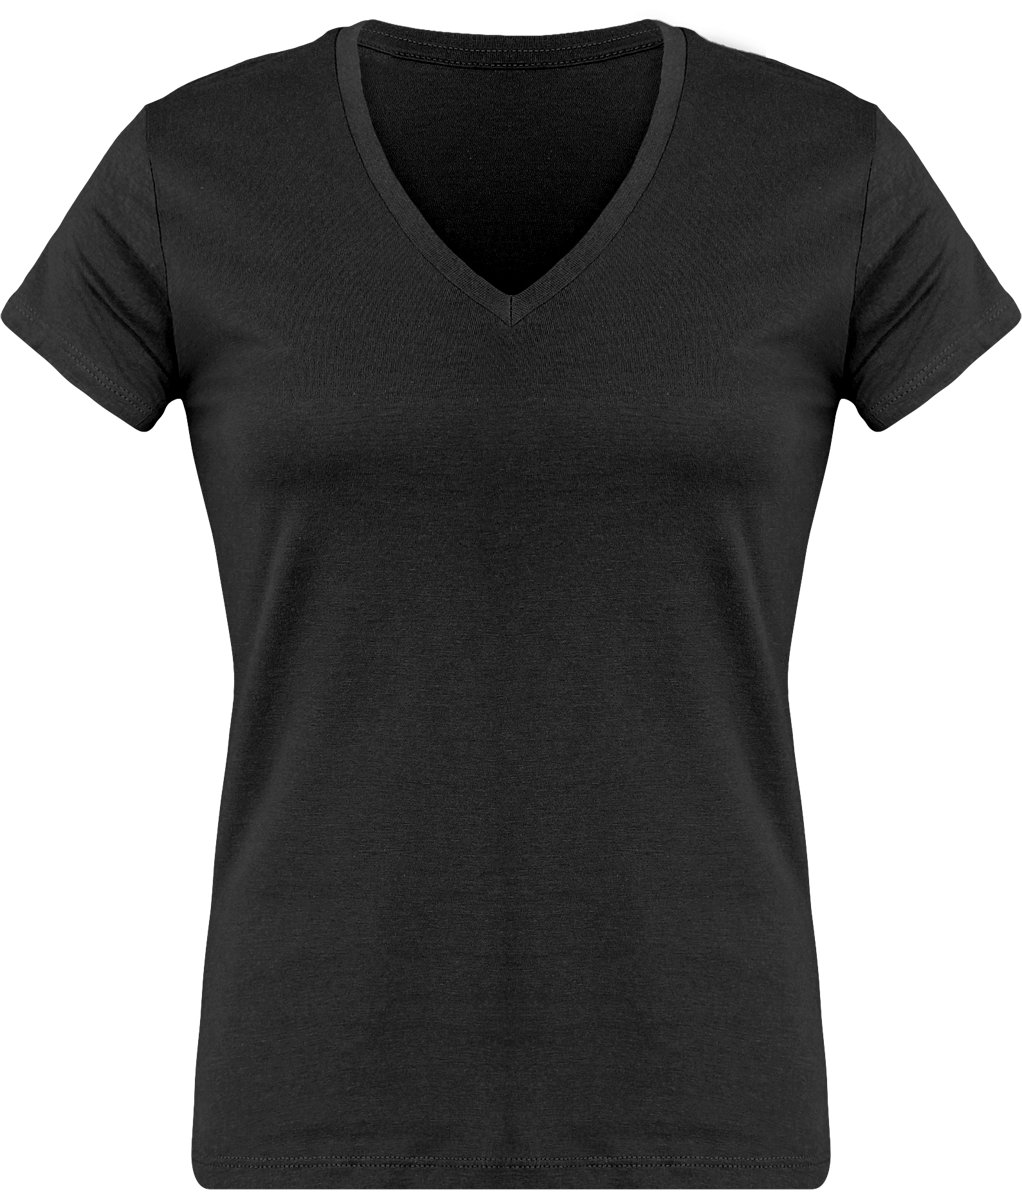 T-Shirt Femme Personnalisé, Féminin Et Confortable Avec Son Col En V Dark Grey